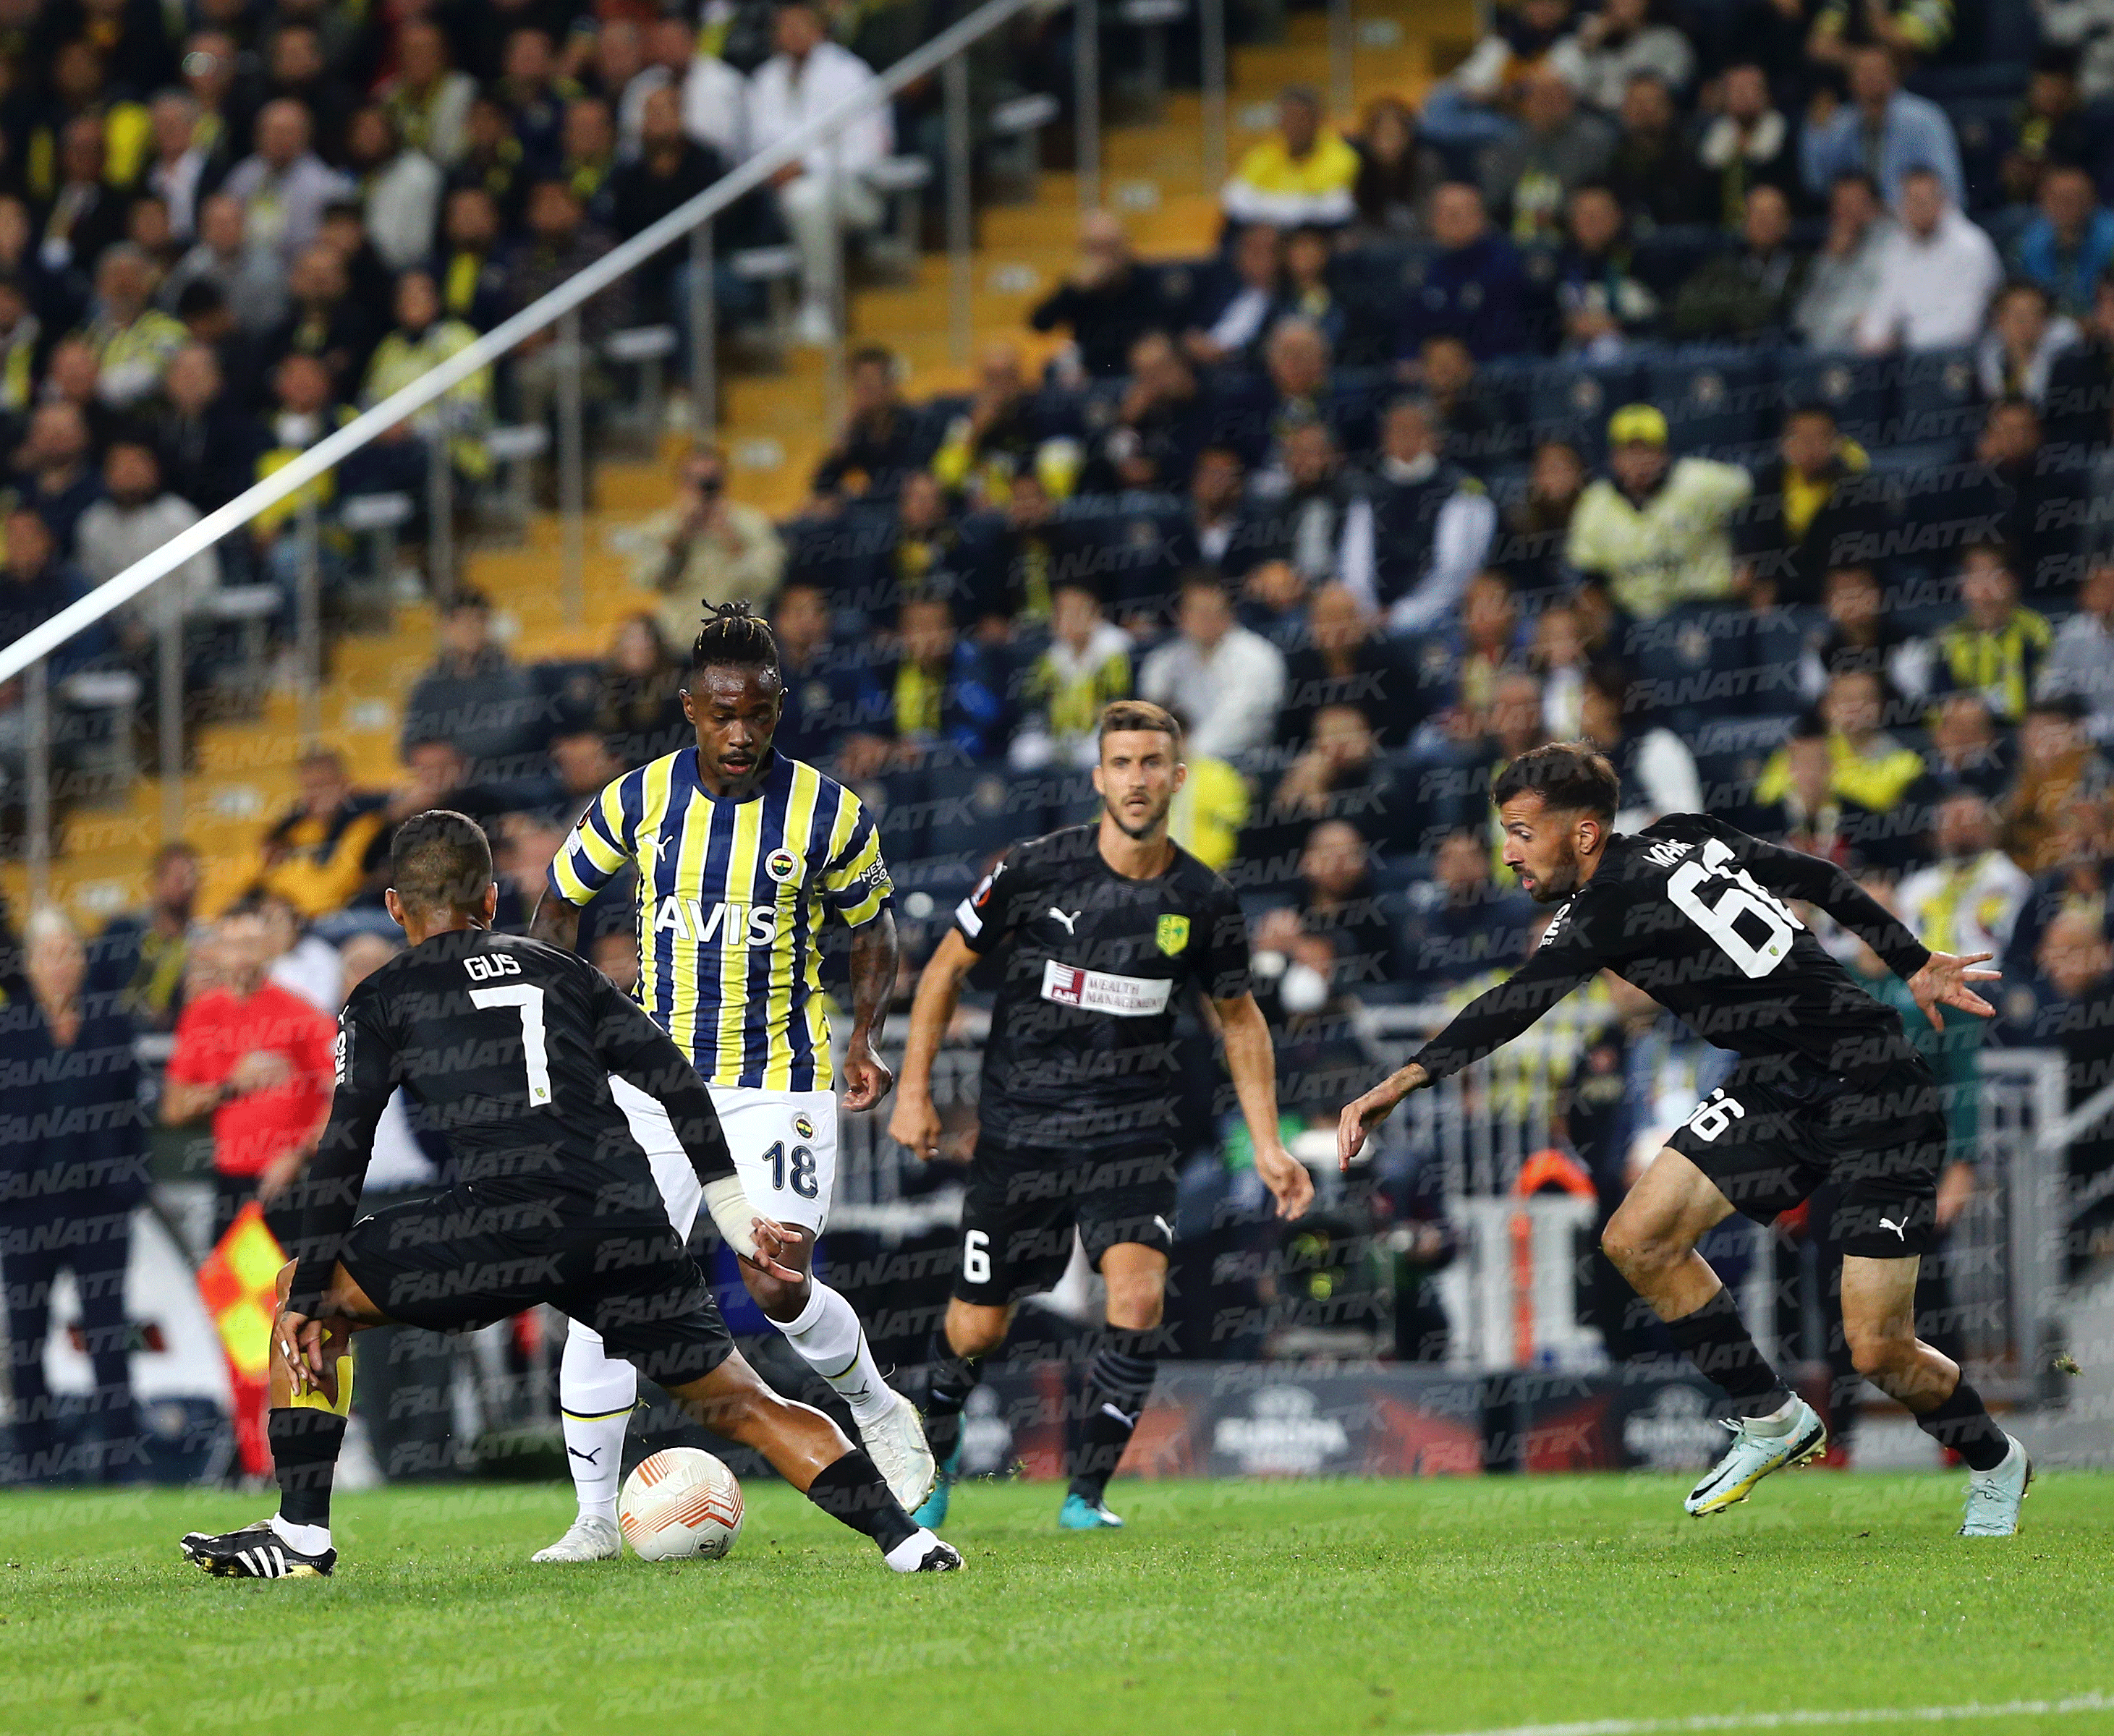 (ÖZET) Fenerbahçe - AEK Larnaca maç sonucu: 2-0